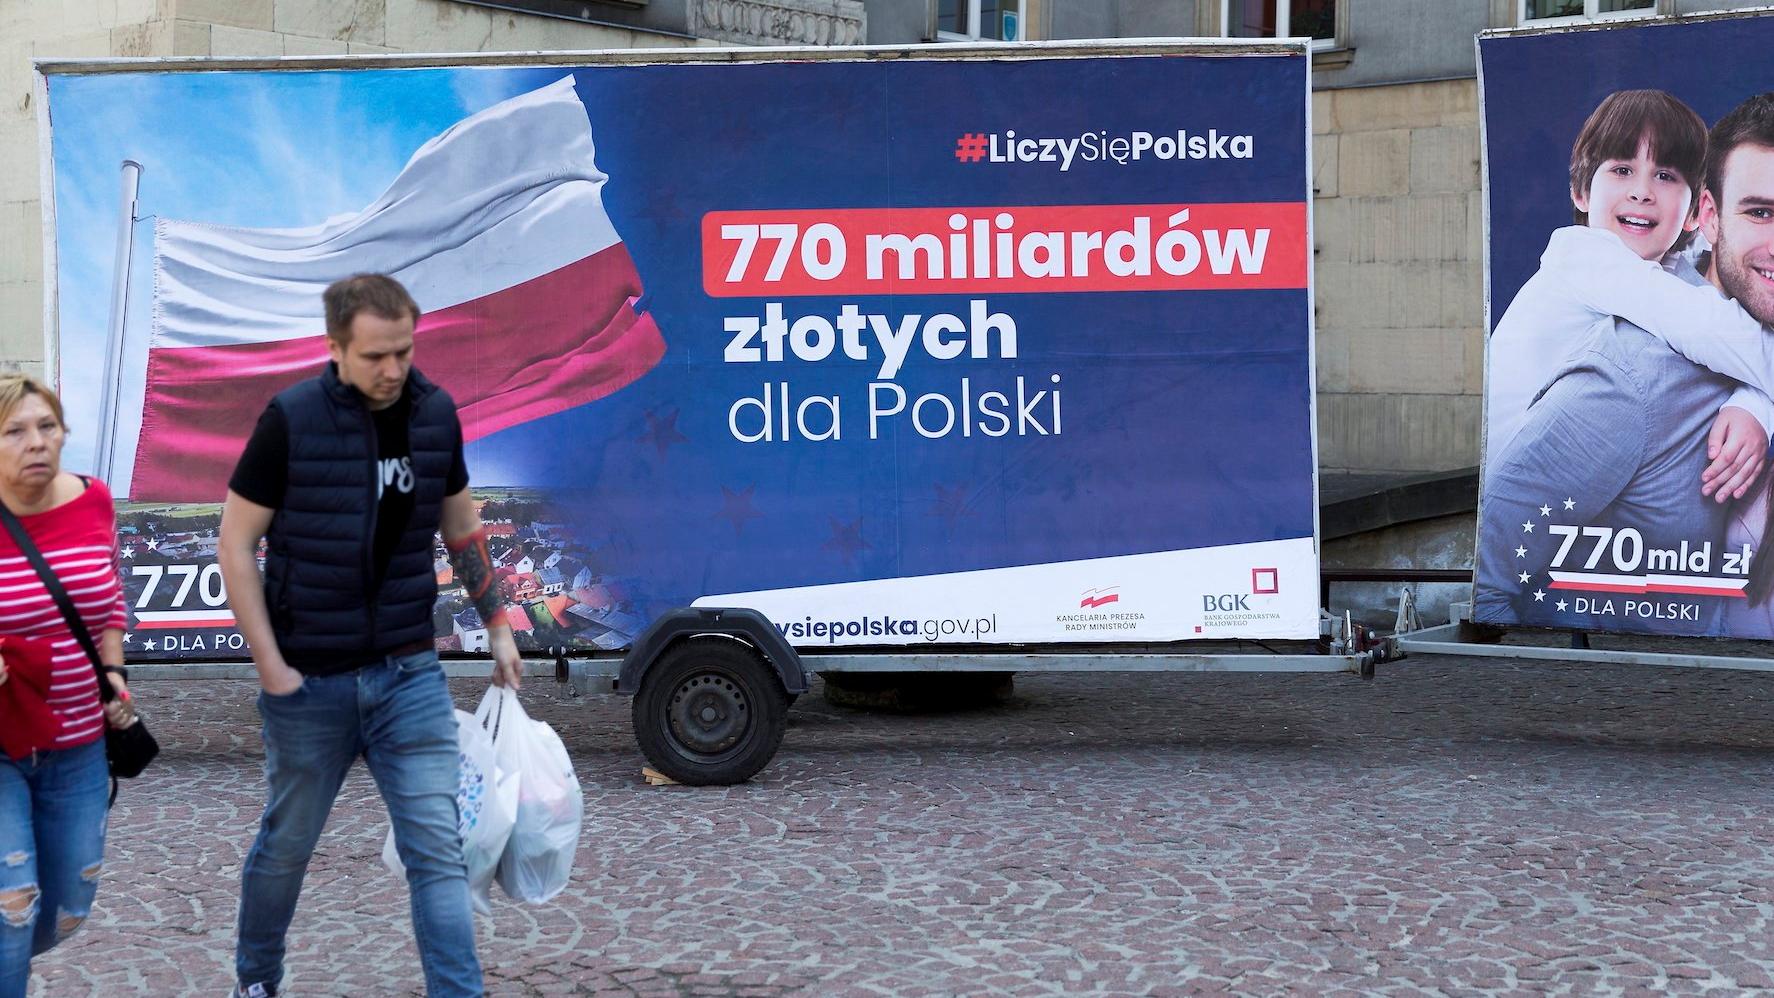 Plakaty "770 miliardów złotych dla Polski"